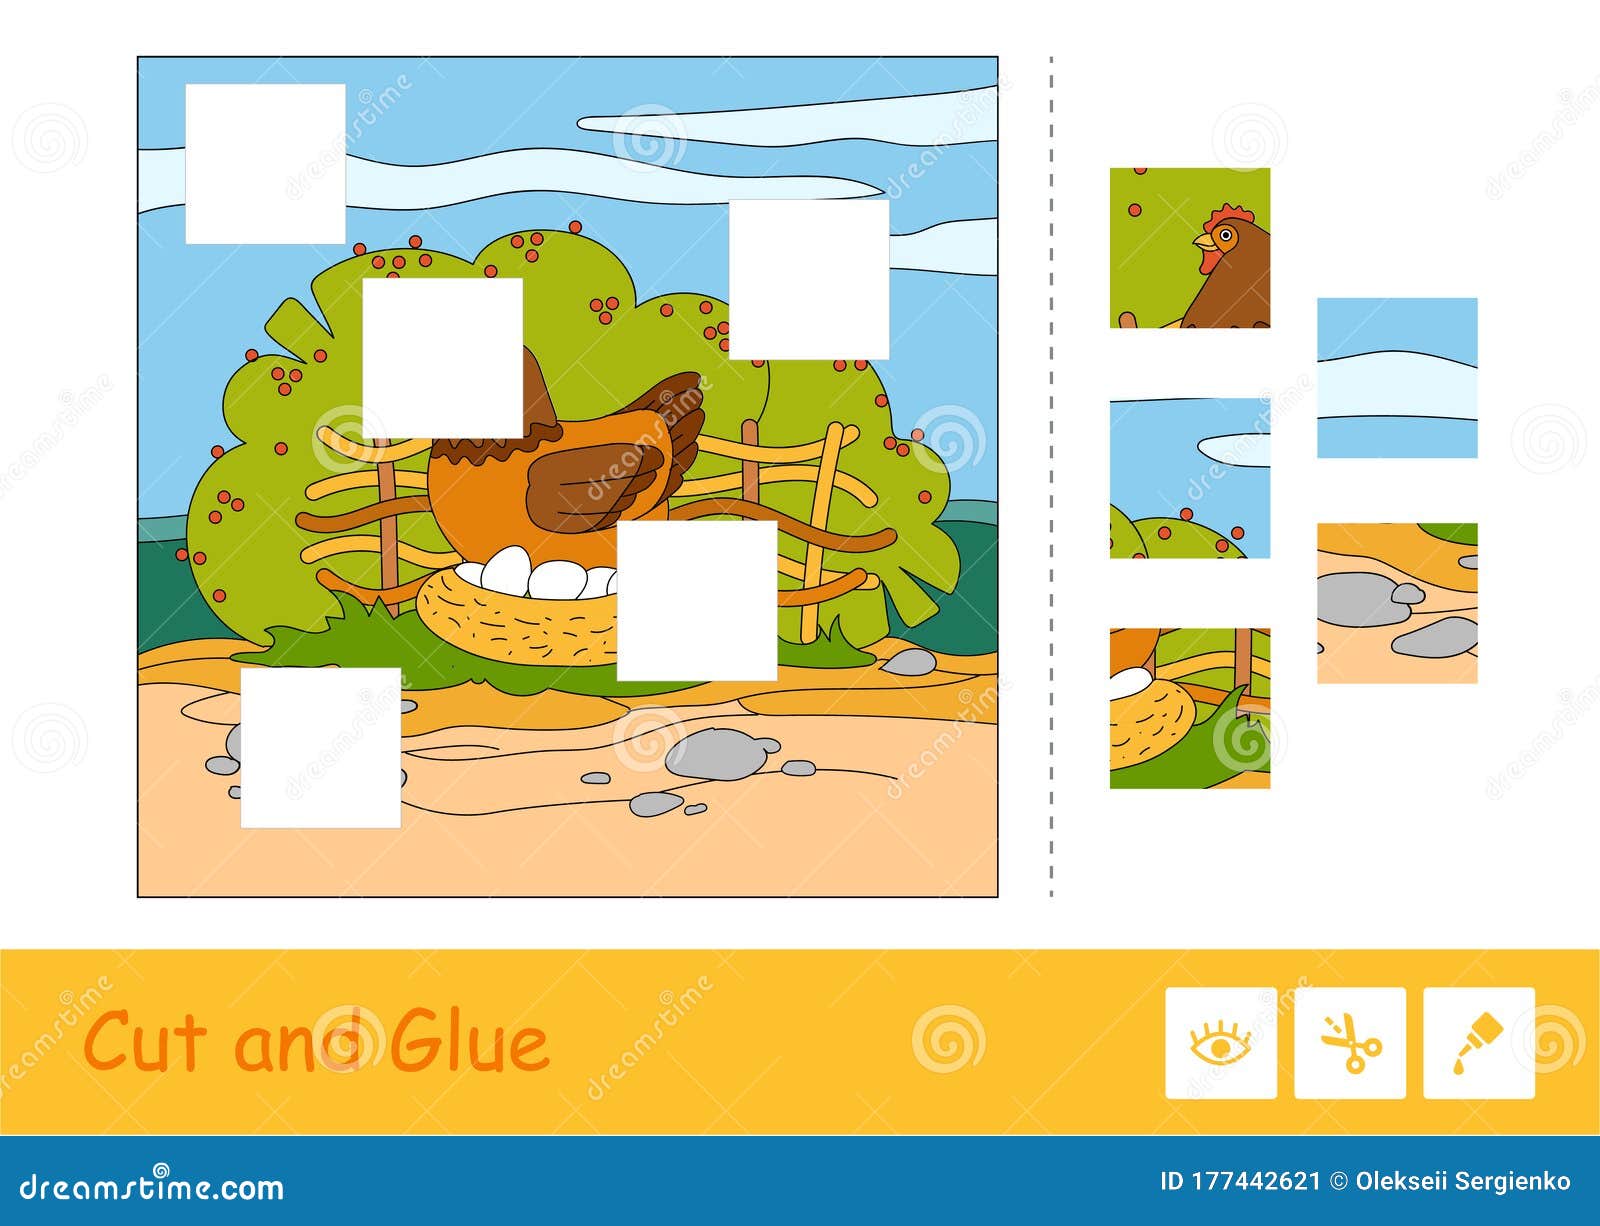 Corte e cole o modelo de quebra-cabeça de vetor colorido e aprenda o jogo  infantil com a imagem de um esquilo sentado sob o cogumelo em uma madeira  atividade educacional para crianças